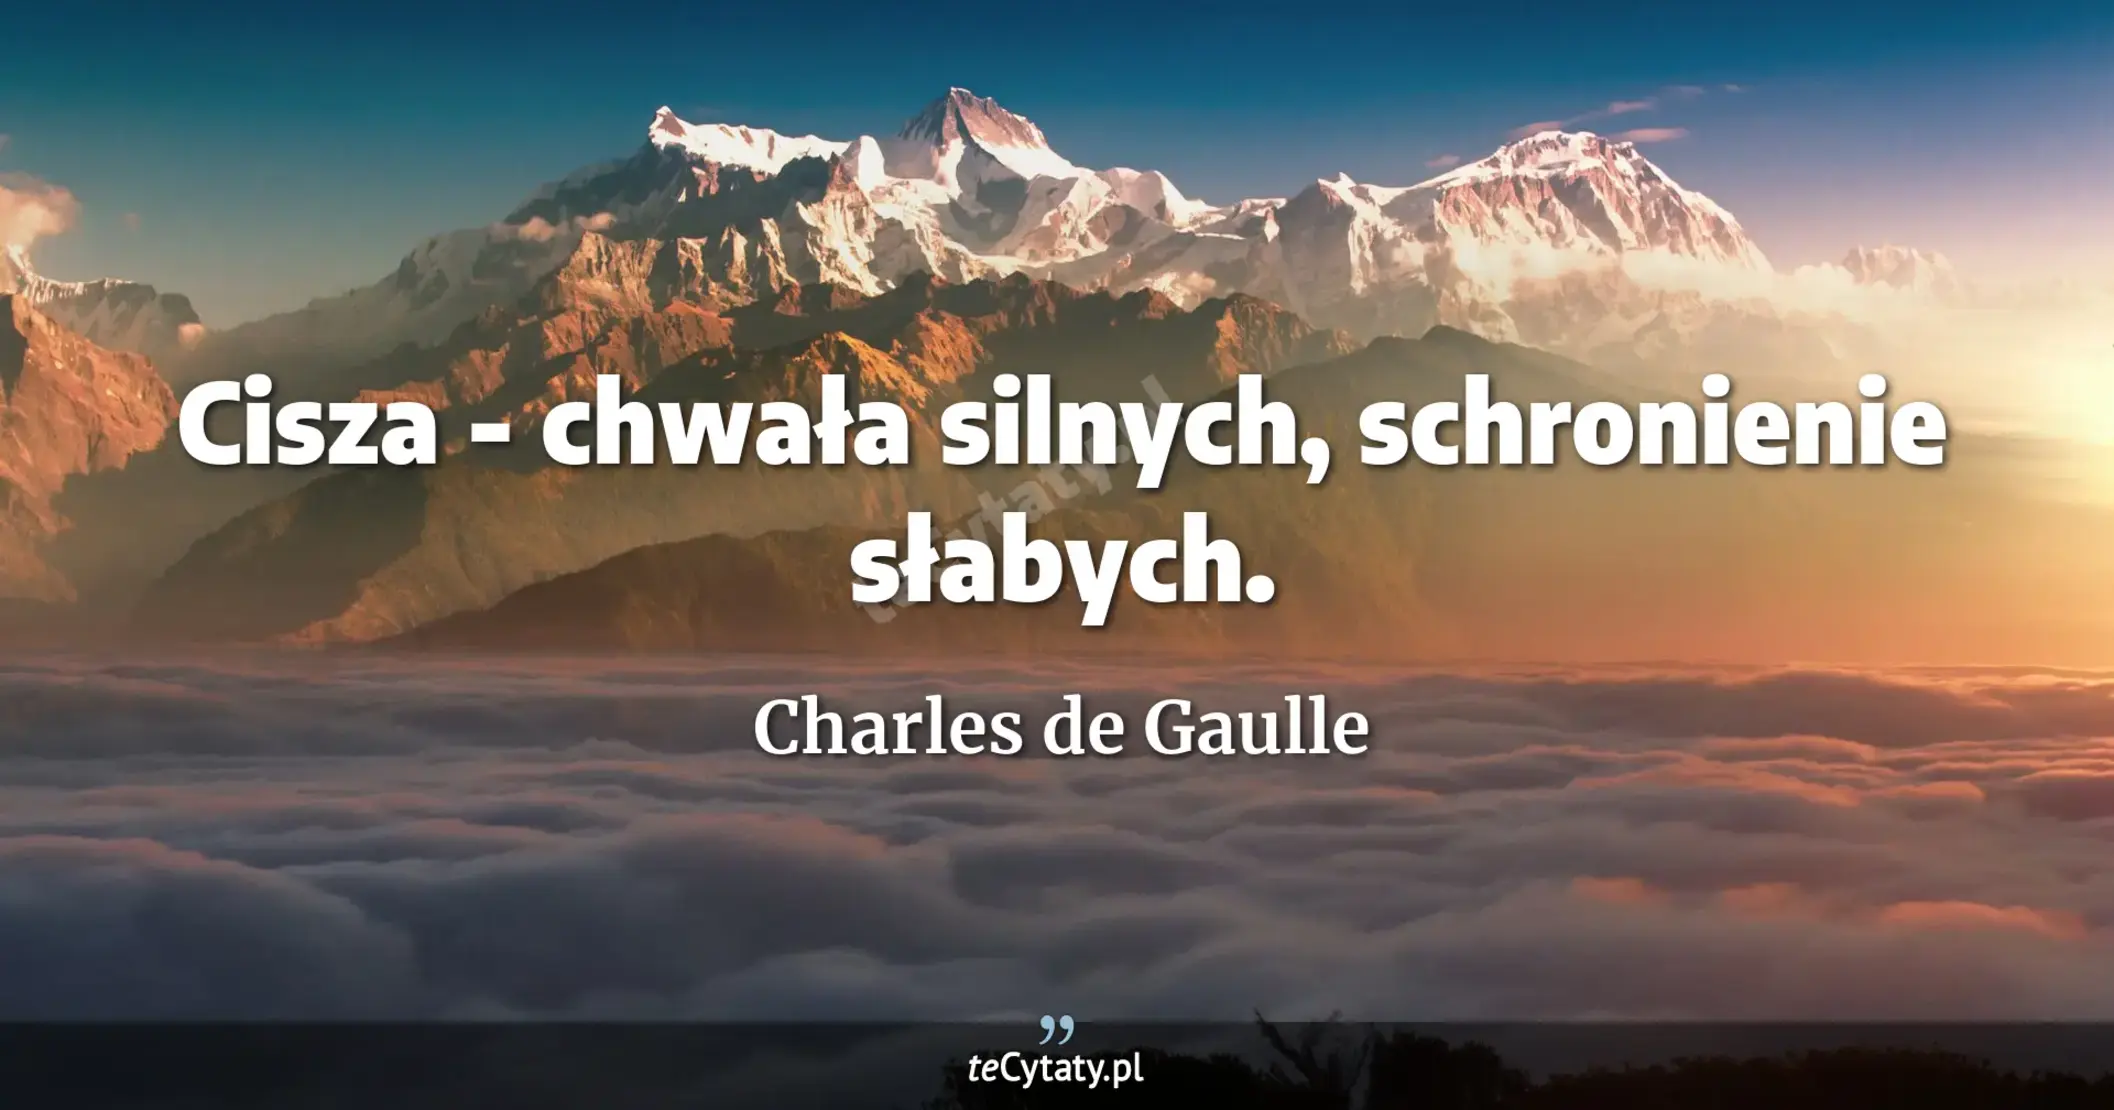 Cisza - chwała silnych, schronienie słabych. - Charles de Gaulle